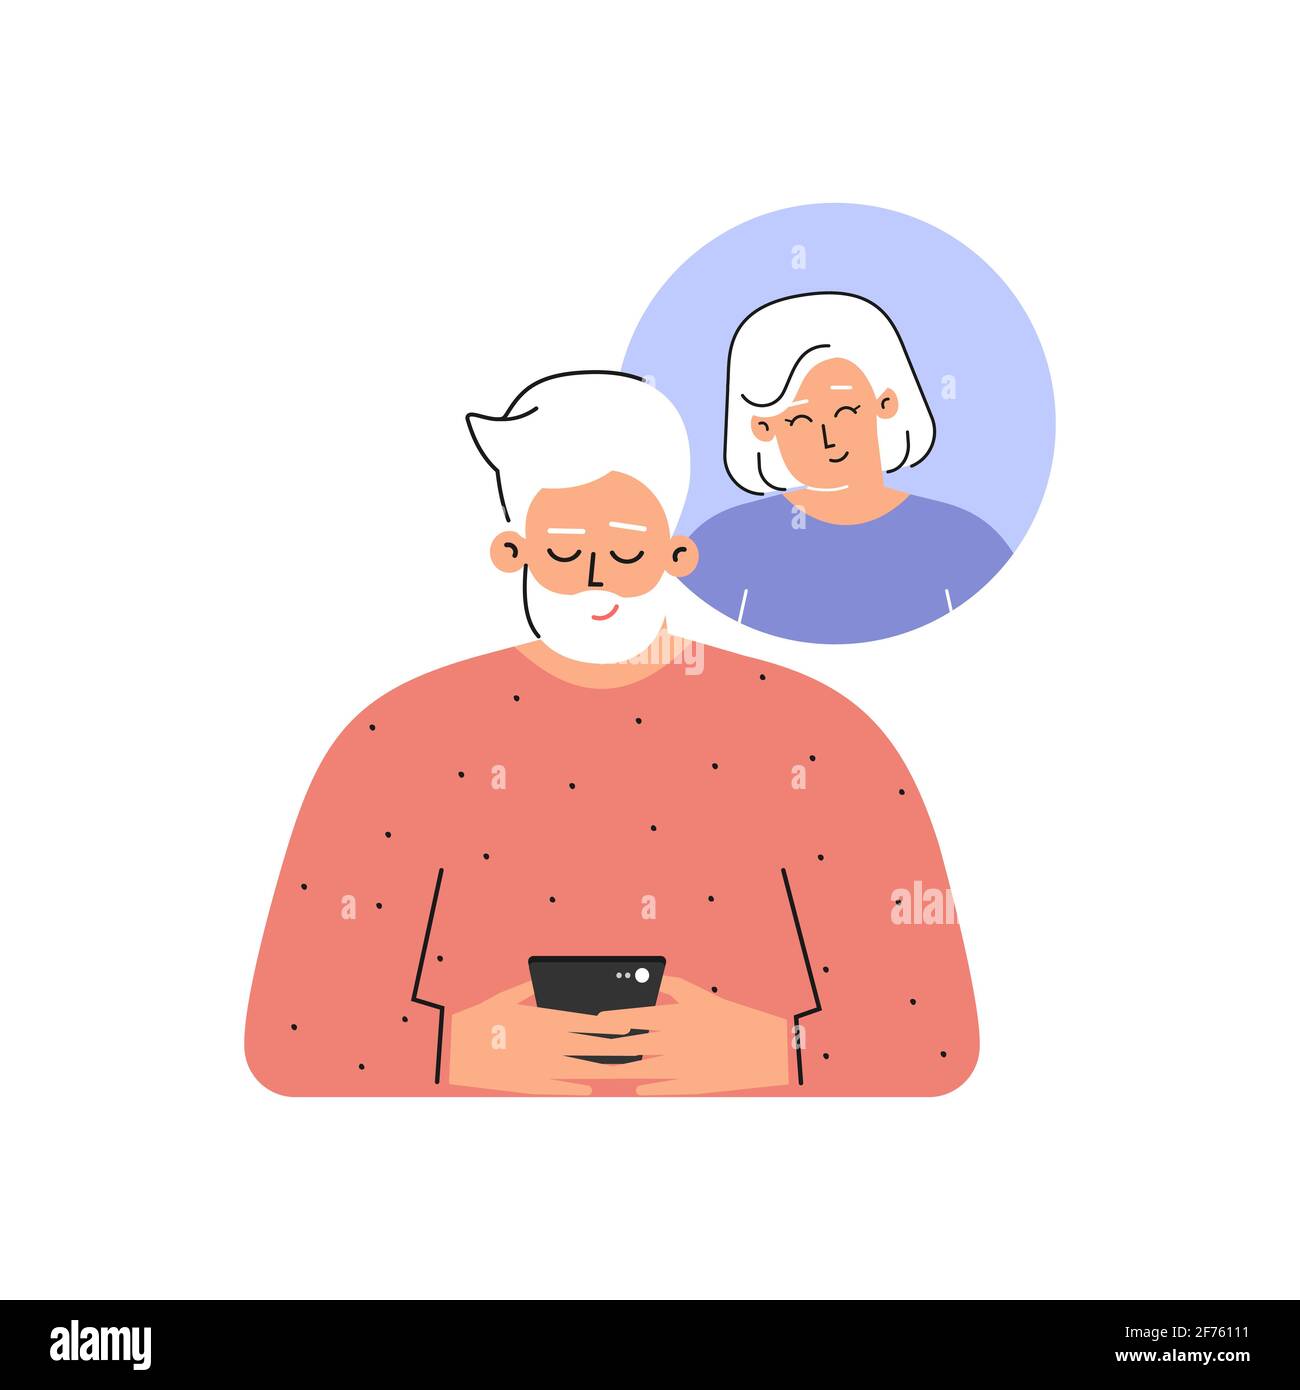 Vektor-isoliertes flaches Konzept. Zeichentrickfiguren. Kaukasischer älterer Mann sendet seiner älteren Freundin eine SMS am Telefon. Mobile App für Online-Dating Stock Vektor